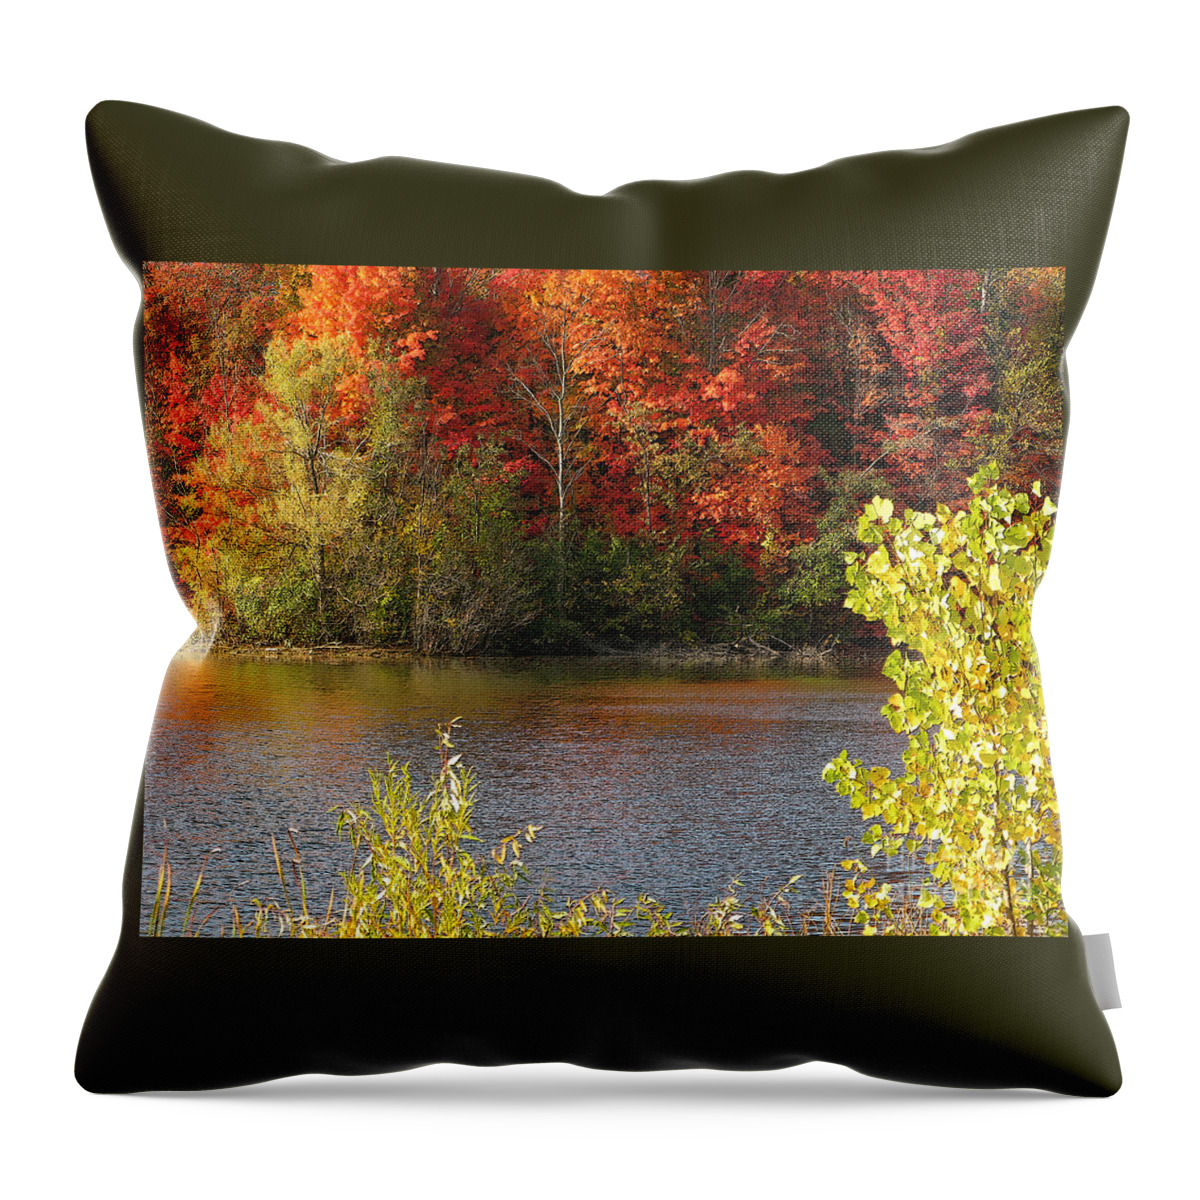 Autumn Throw Pillow featuring the photograph Sunlit Autumn by Ann Horn